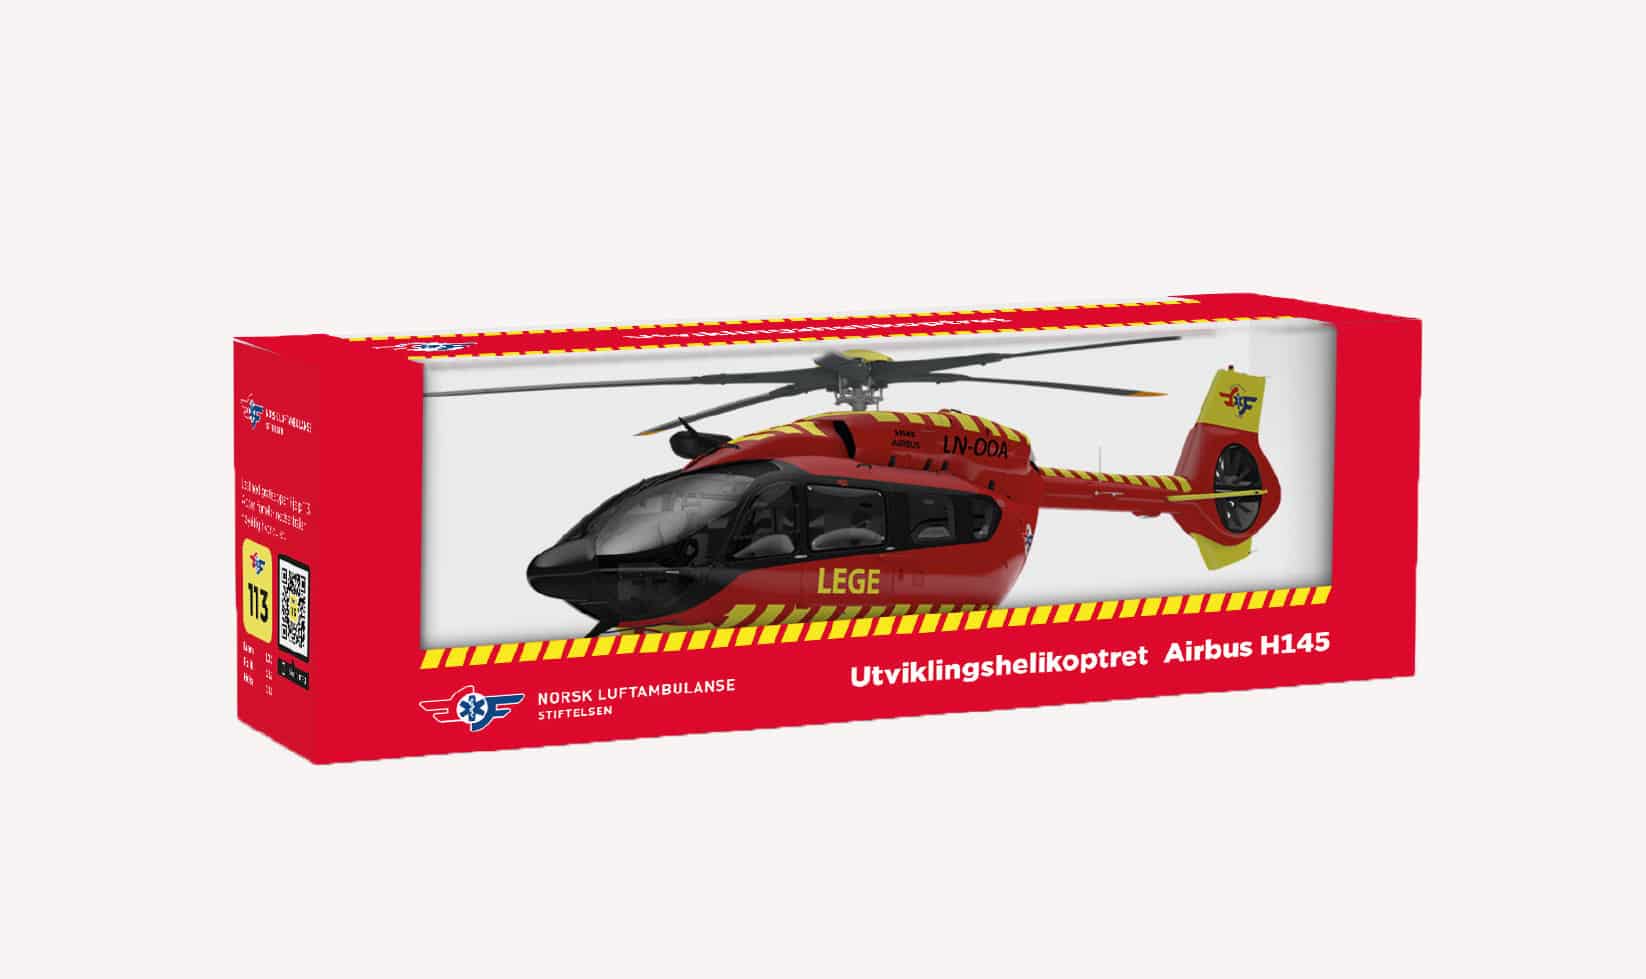 Modellhelikopter av Utviklingshelikoptret